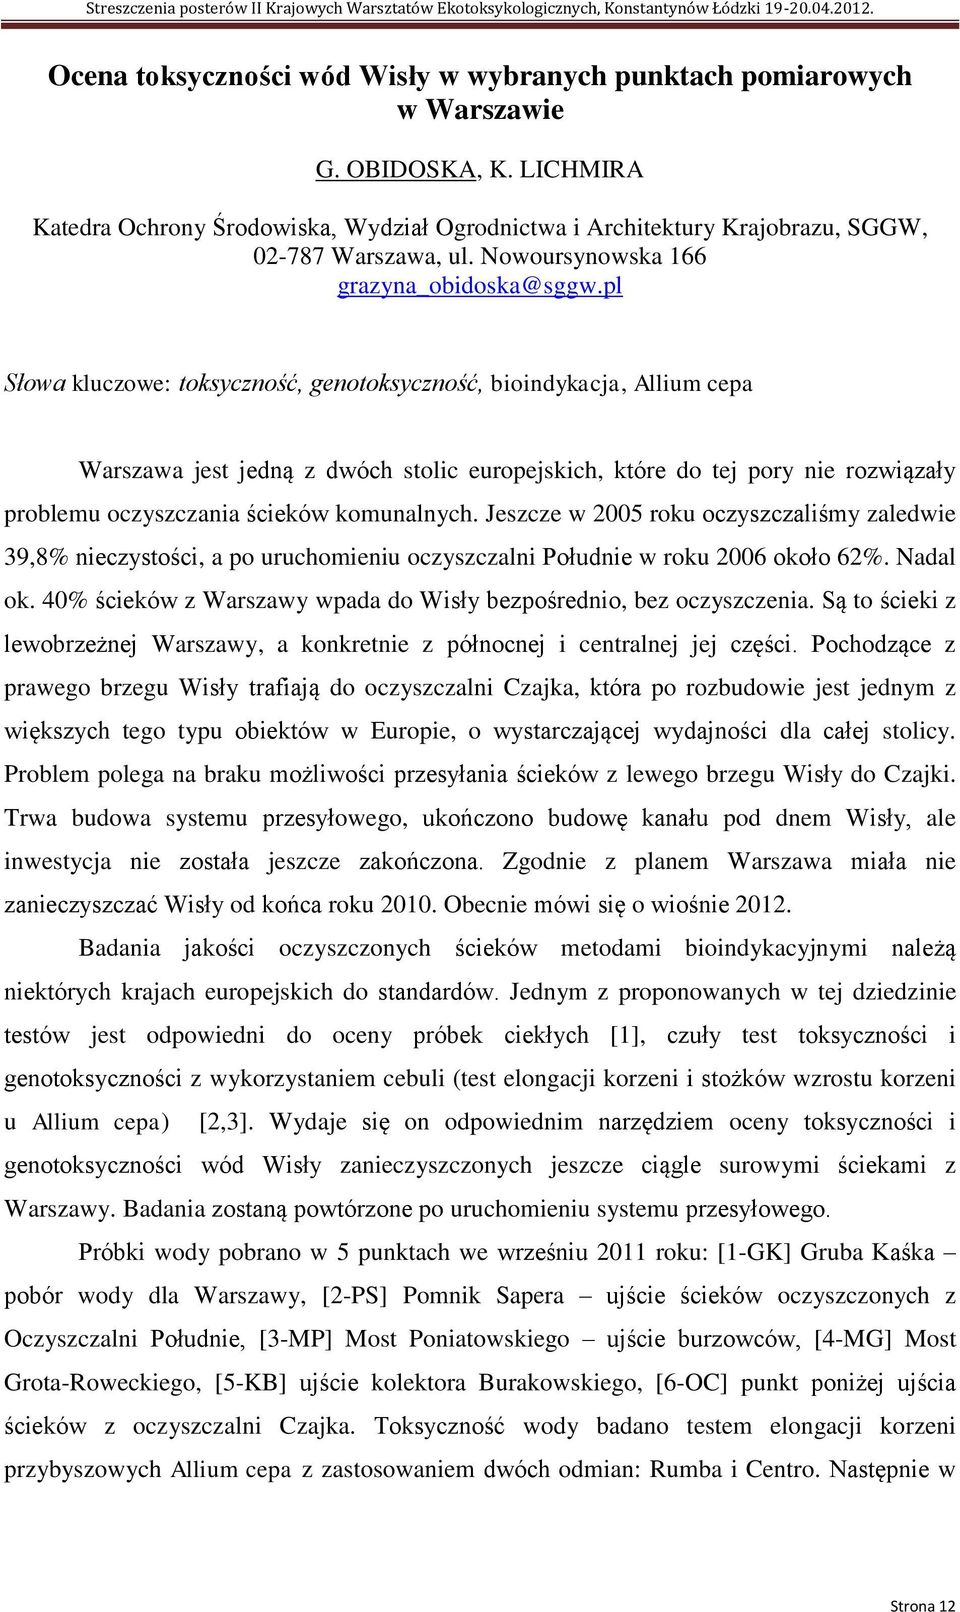 pl Słowa kluczowe: toksyczność, genotoksyczność, bioindykacja, Allium cepa Warszawa jest jedną z dwóch stolic europejskich, które do tej pory nie rozwiązały problemu oczyszczania ścieków komunalnych.